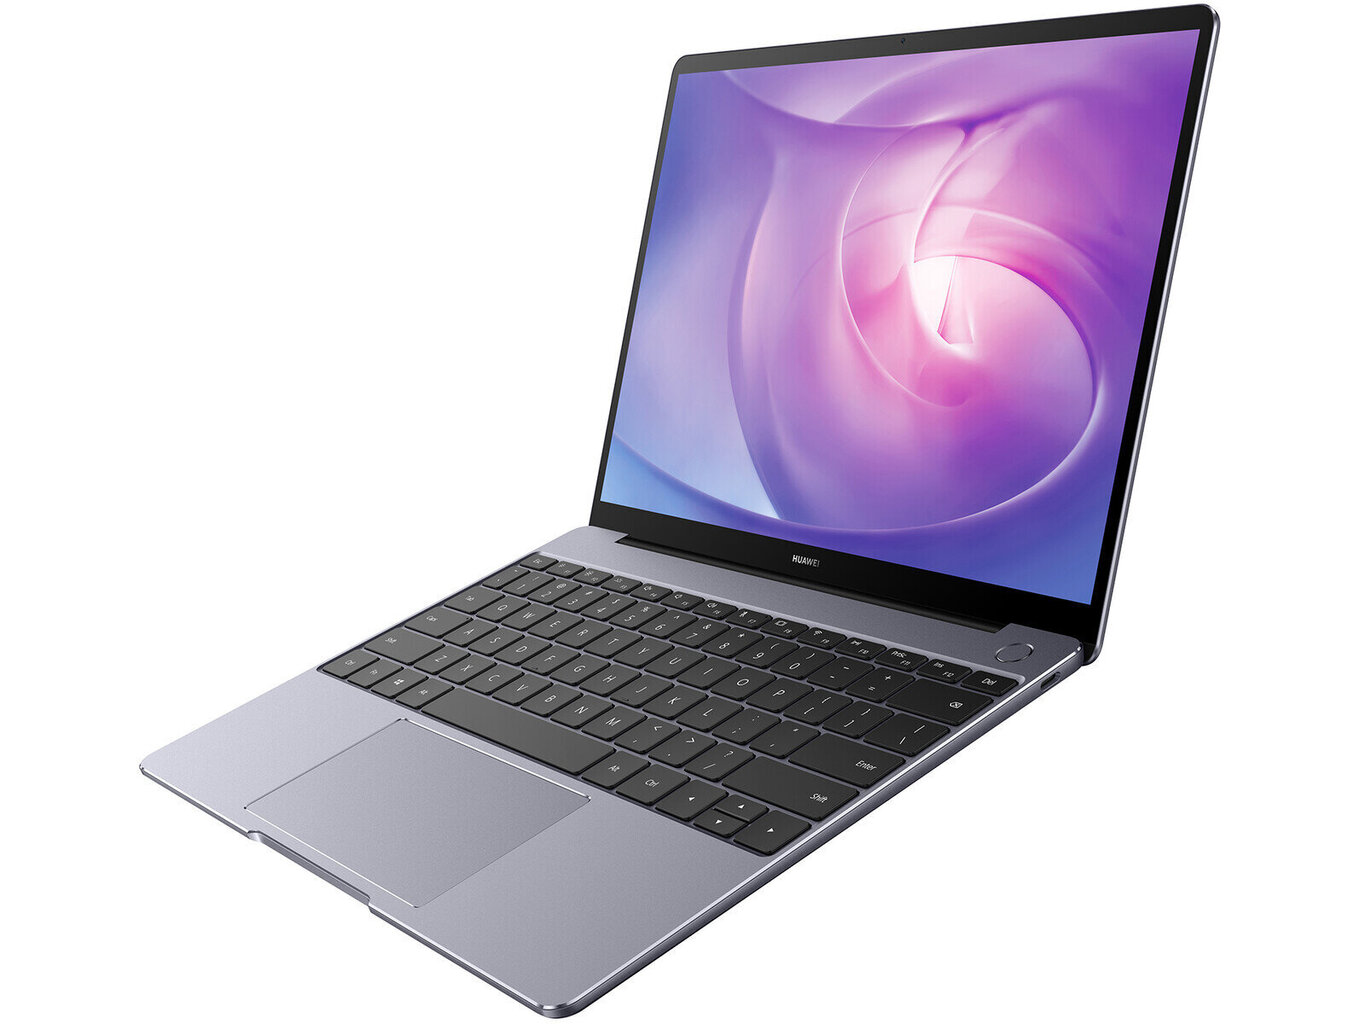 Huawei MateBook 13;i5-10210U (6MB, 4C/8T, 1.6 - 4.2 GHz)|8GB|512GB|13.3" IPS|Wi-Fi 5,802.11ac 2x2 Wi-Fi + Bluetooth 5|Windows 11|Uuendatud/Renew цена и информация | Sülearvutid | kaup24.ee